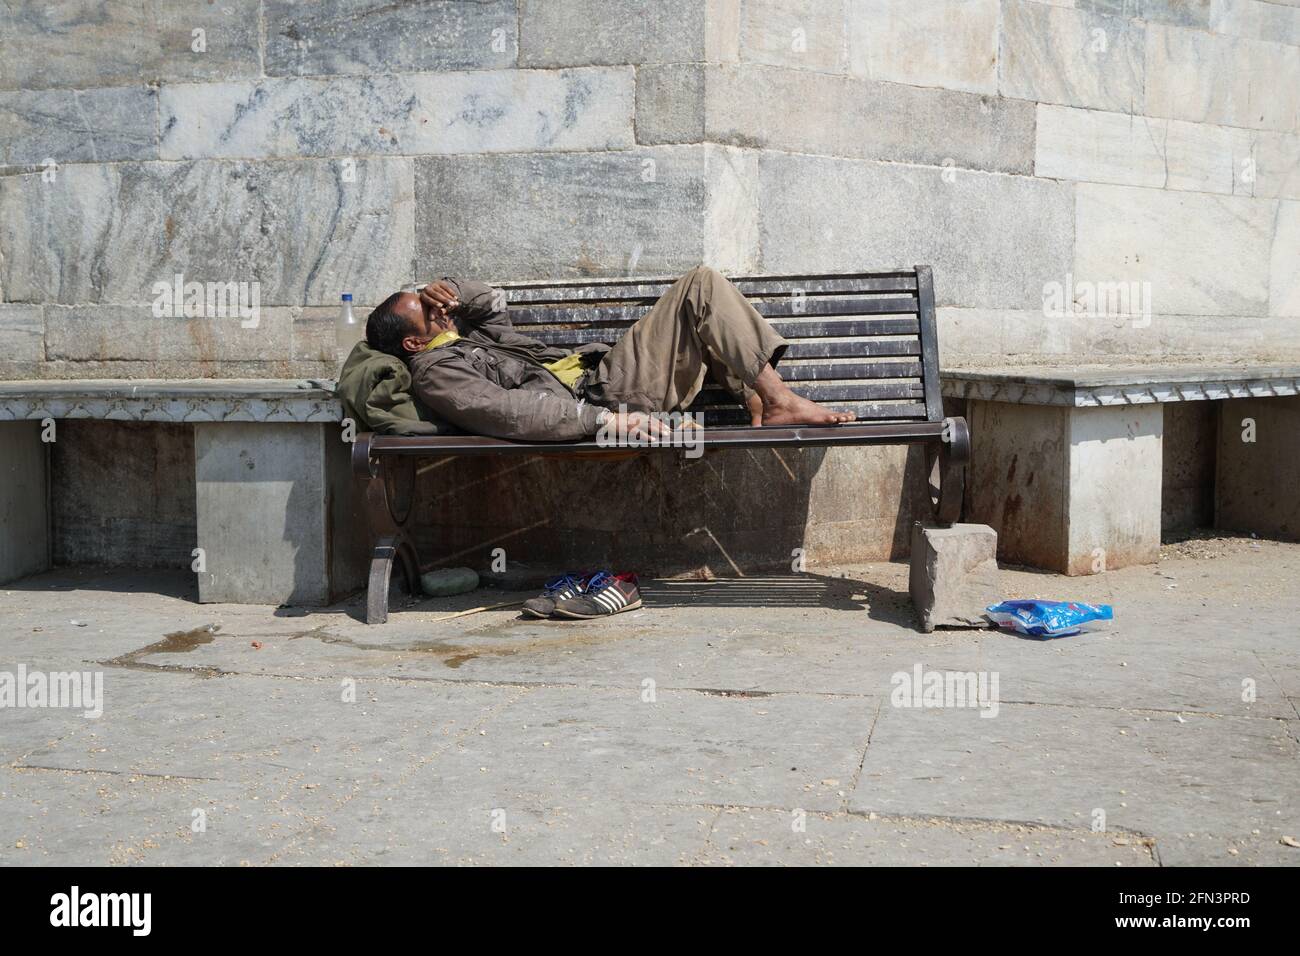 Armer obdachloser Bettler oder Flüchtling, der tagsüber auf einer schmutzigen Holzbank in einer Einbahnstraße in der Stadt schläft. Sozialdokumentarisches Konzept. Schuh Stockfoto